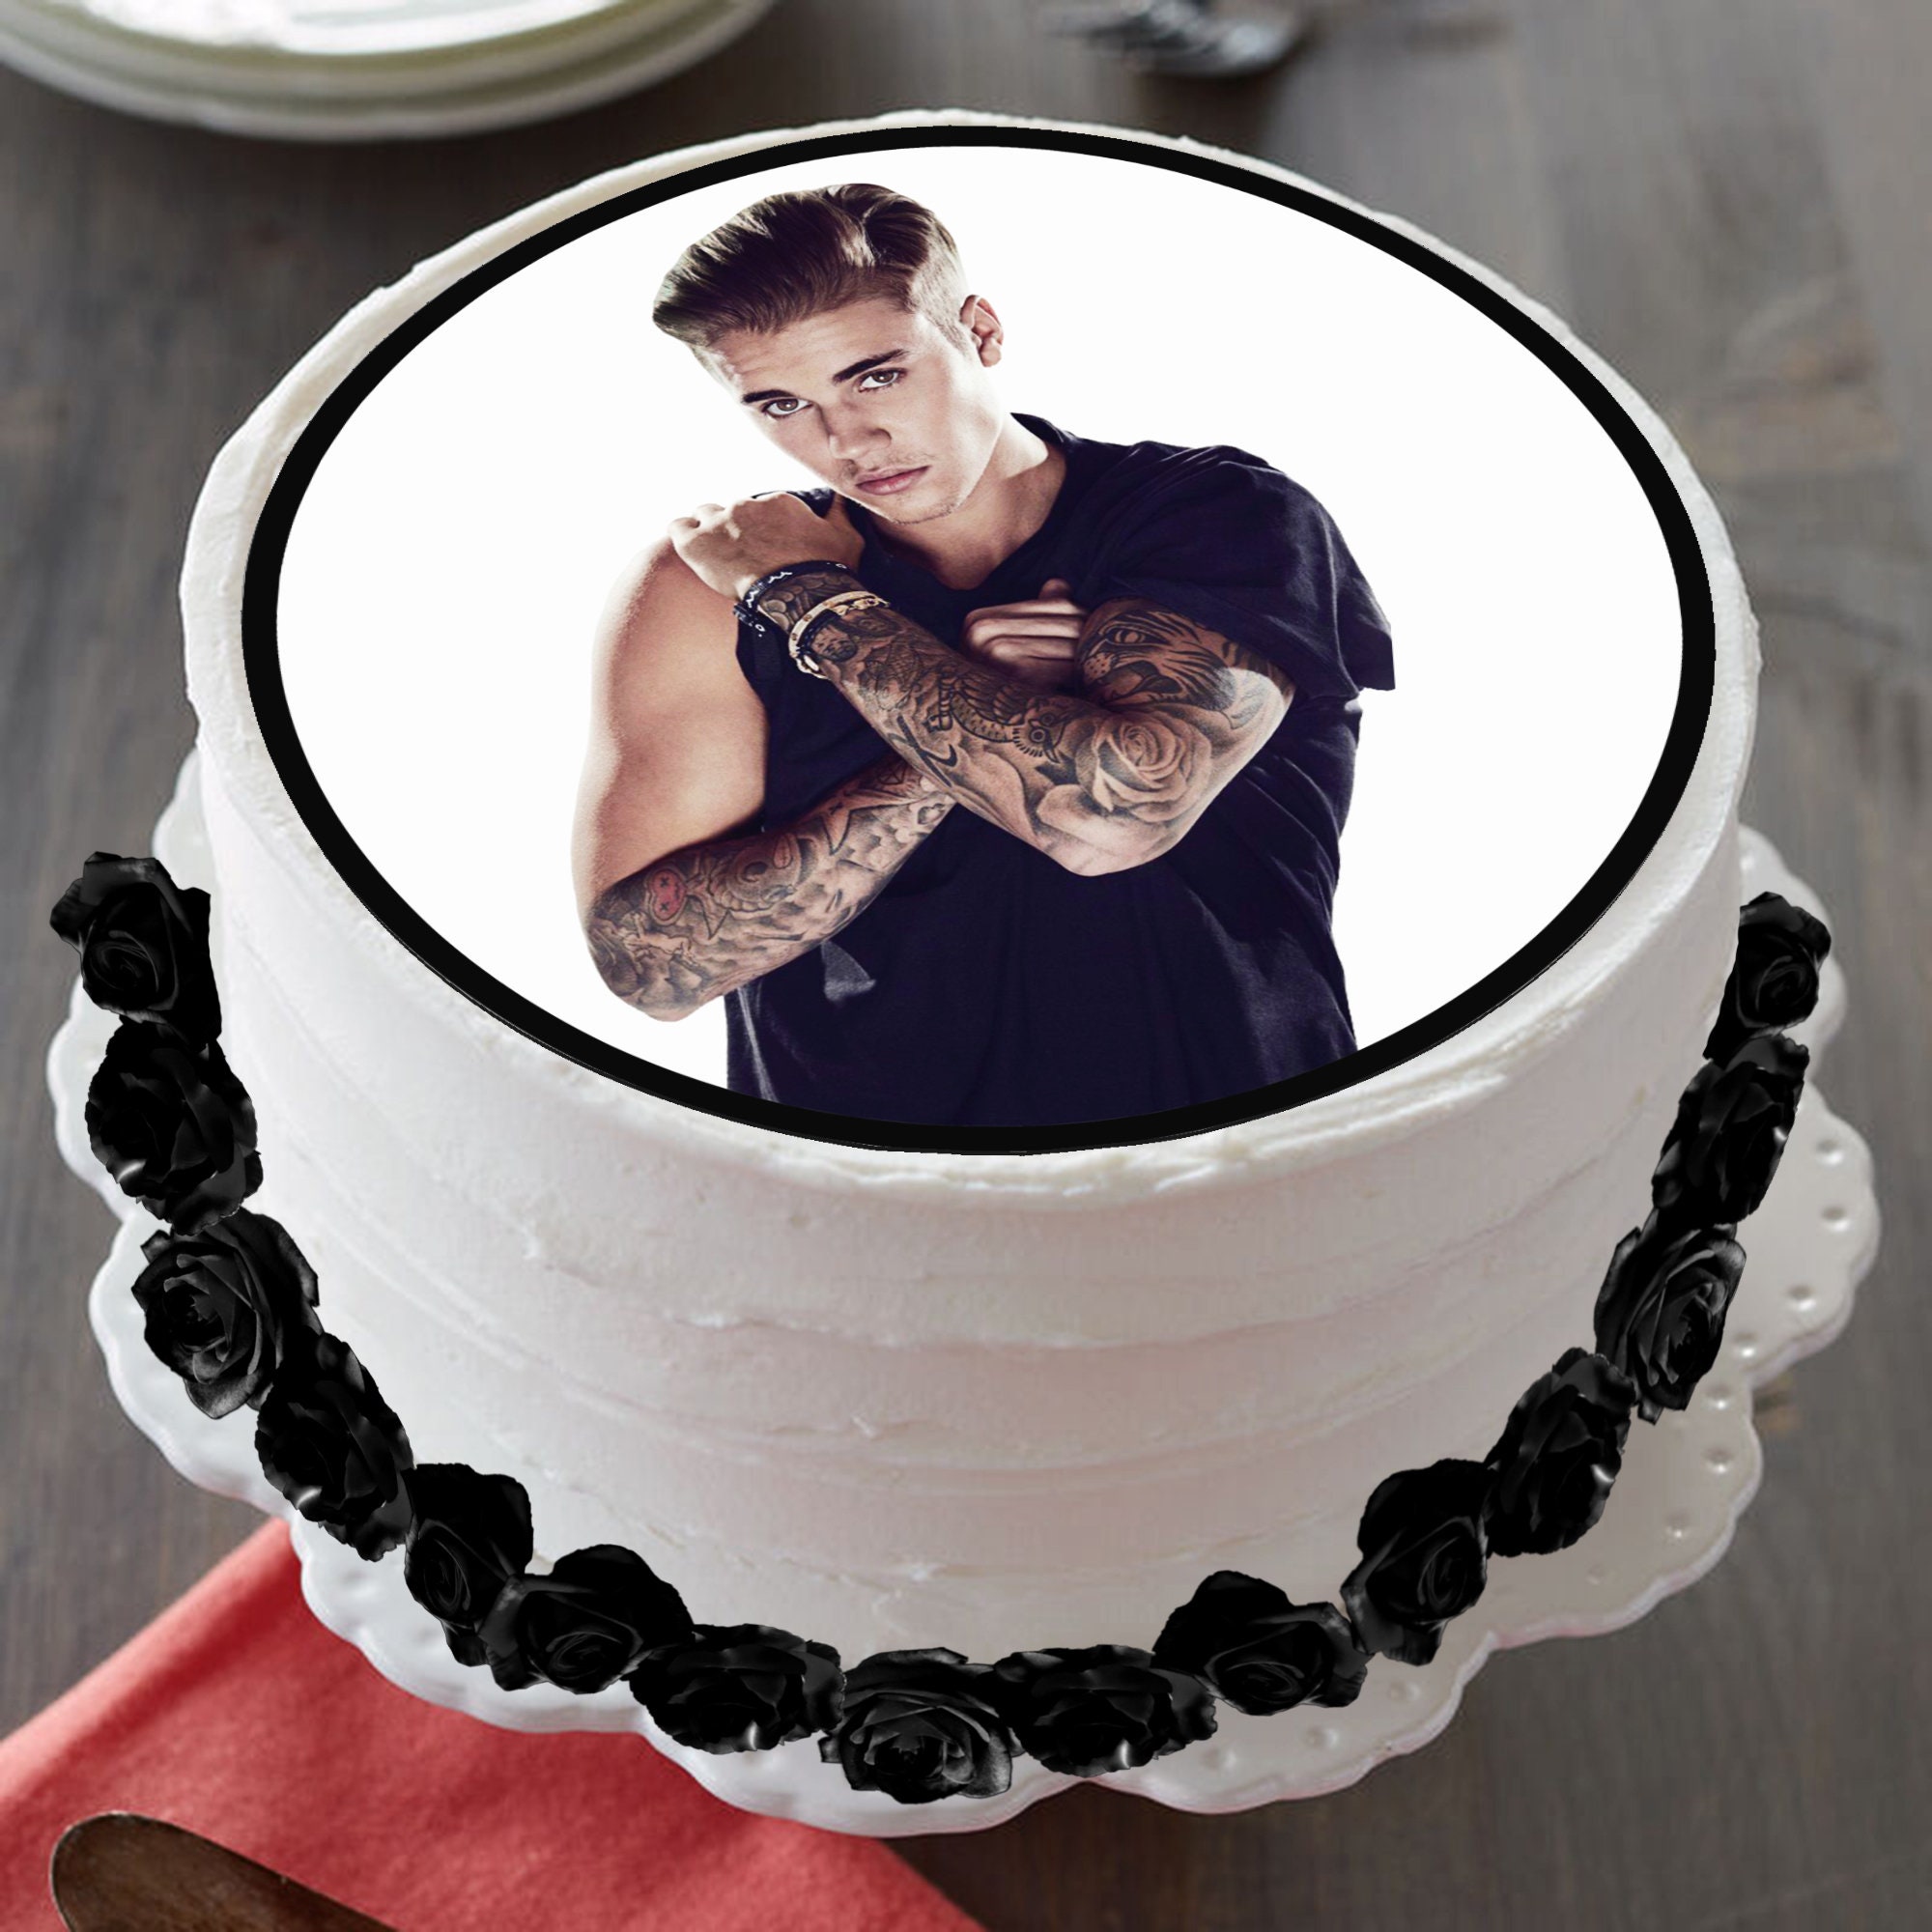 Bieber Fever Cake 